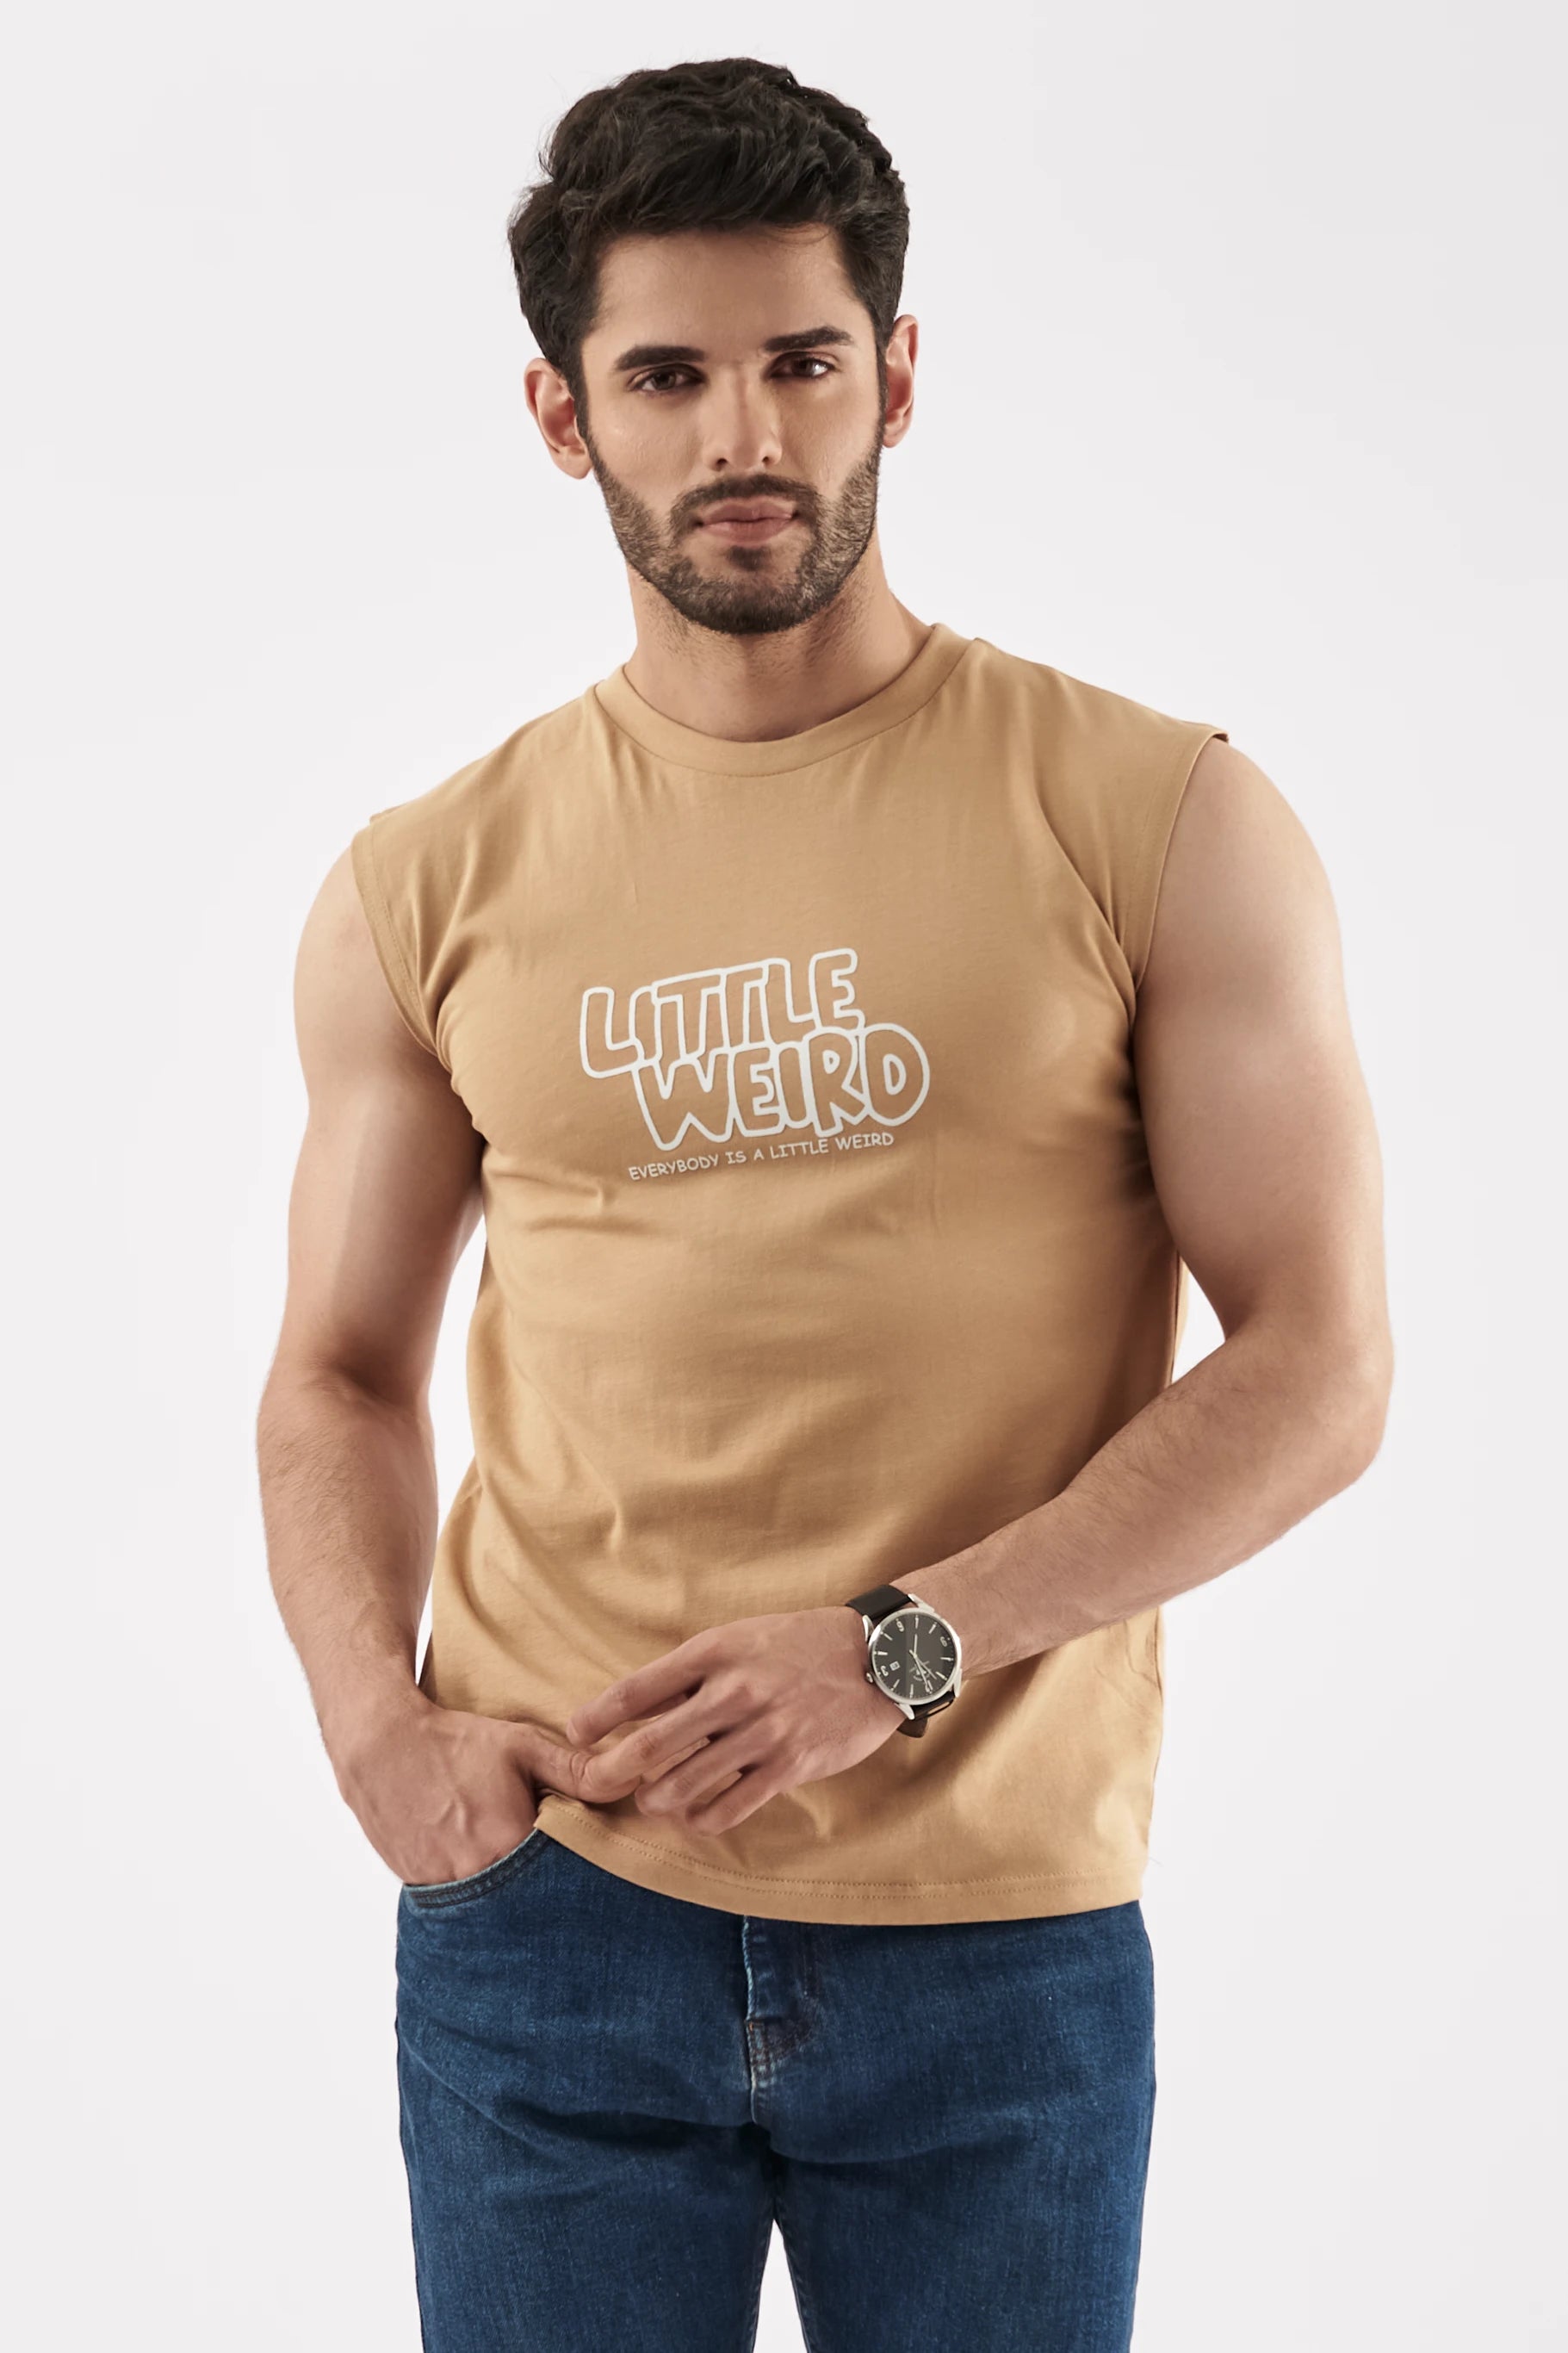 Men's Sleeveless T-Shirt Sand